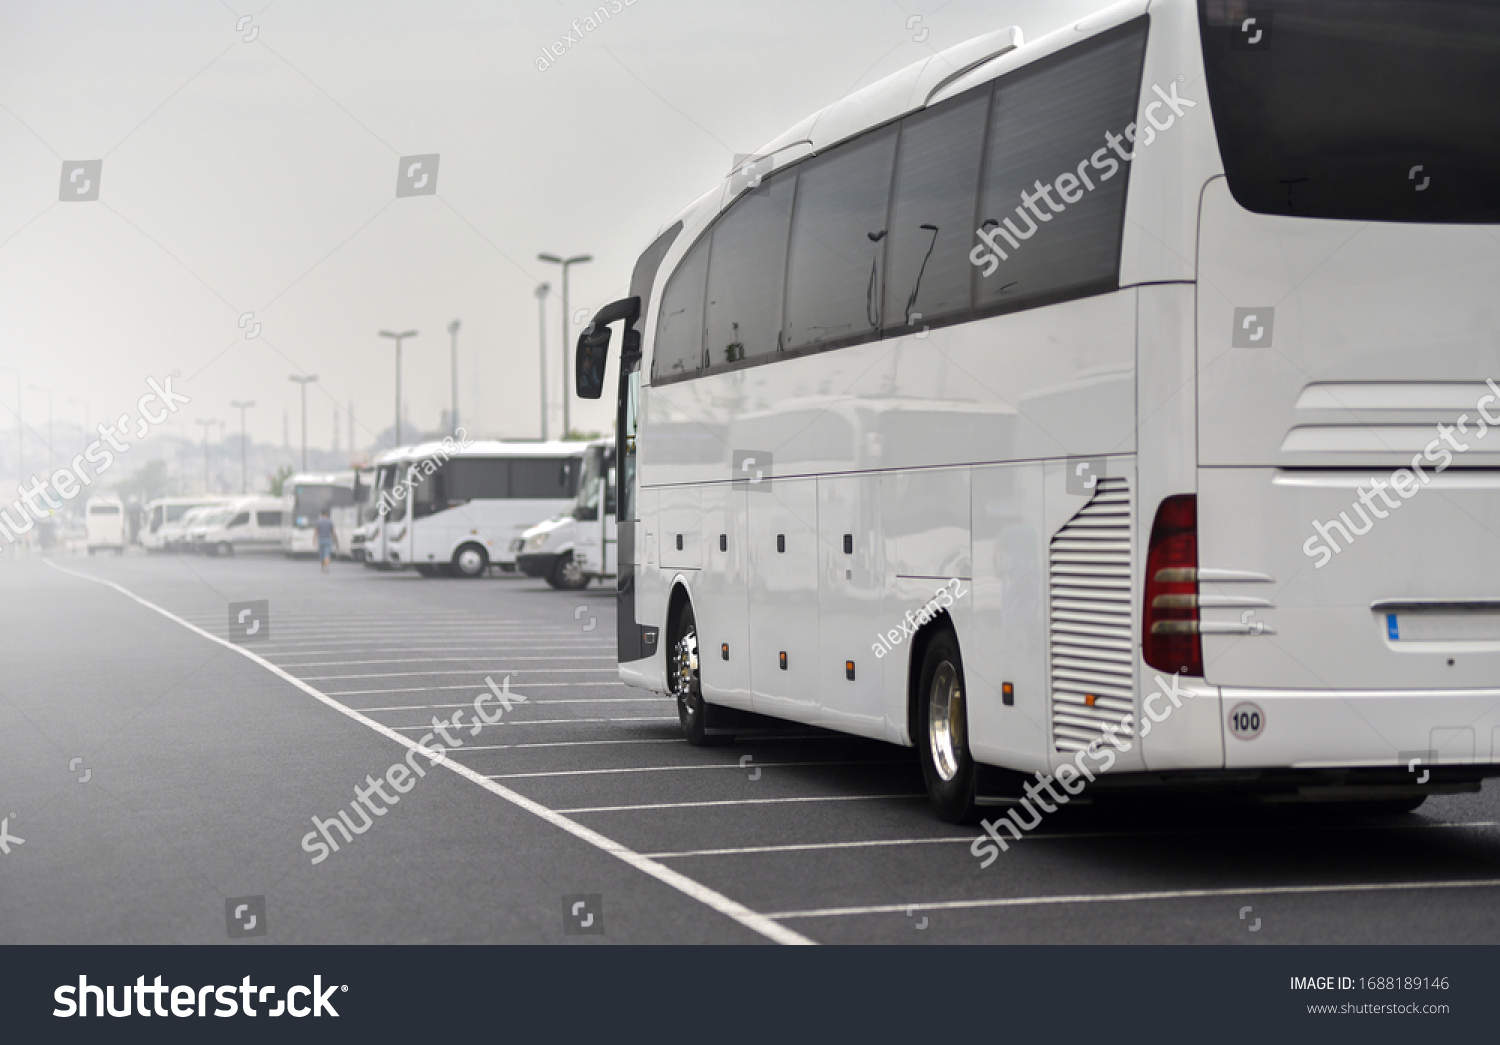 large tour bus rides along parked minibuses #1688189146